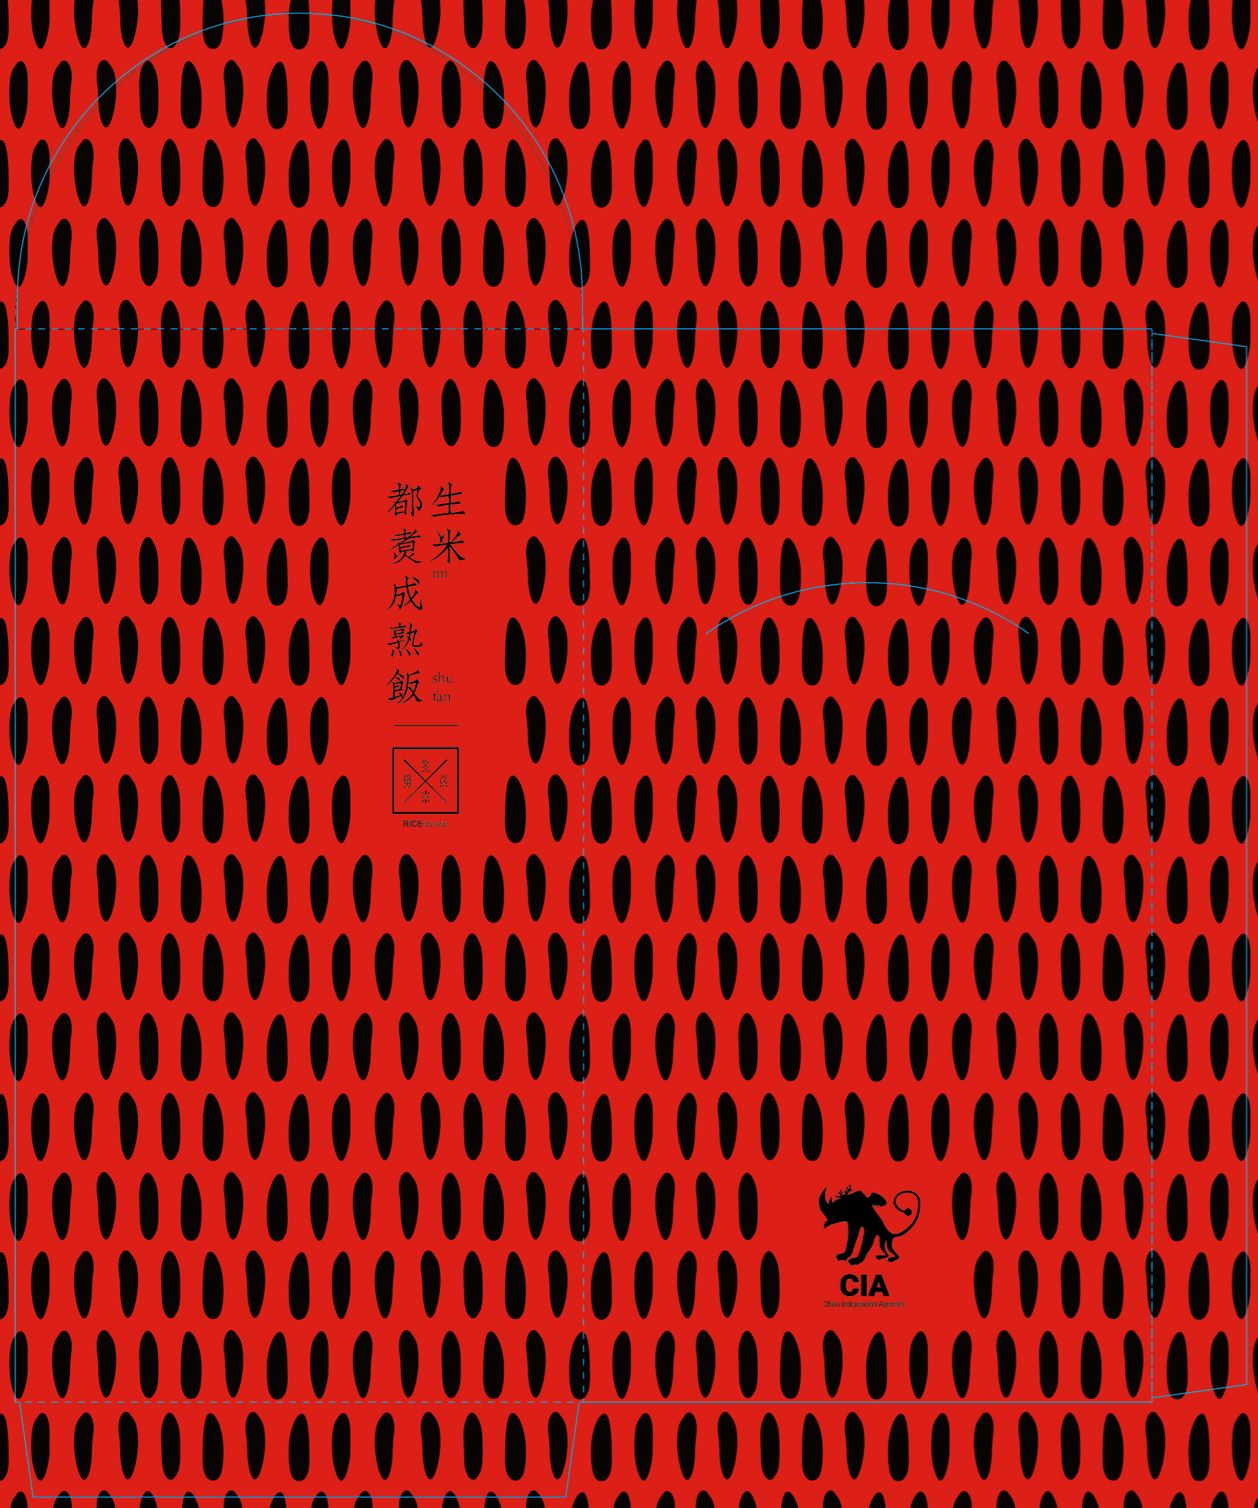 中国有红包!一场 14 家顶尖创意公司的红包作品